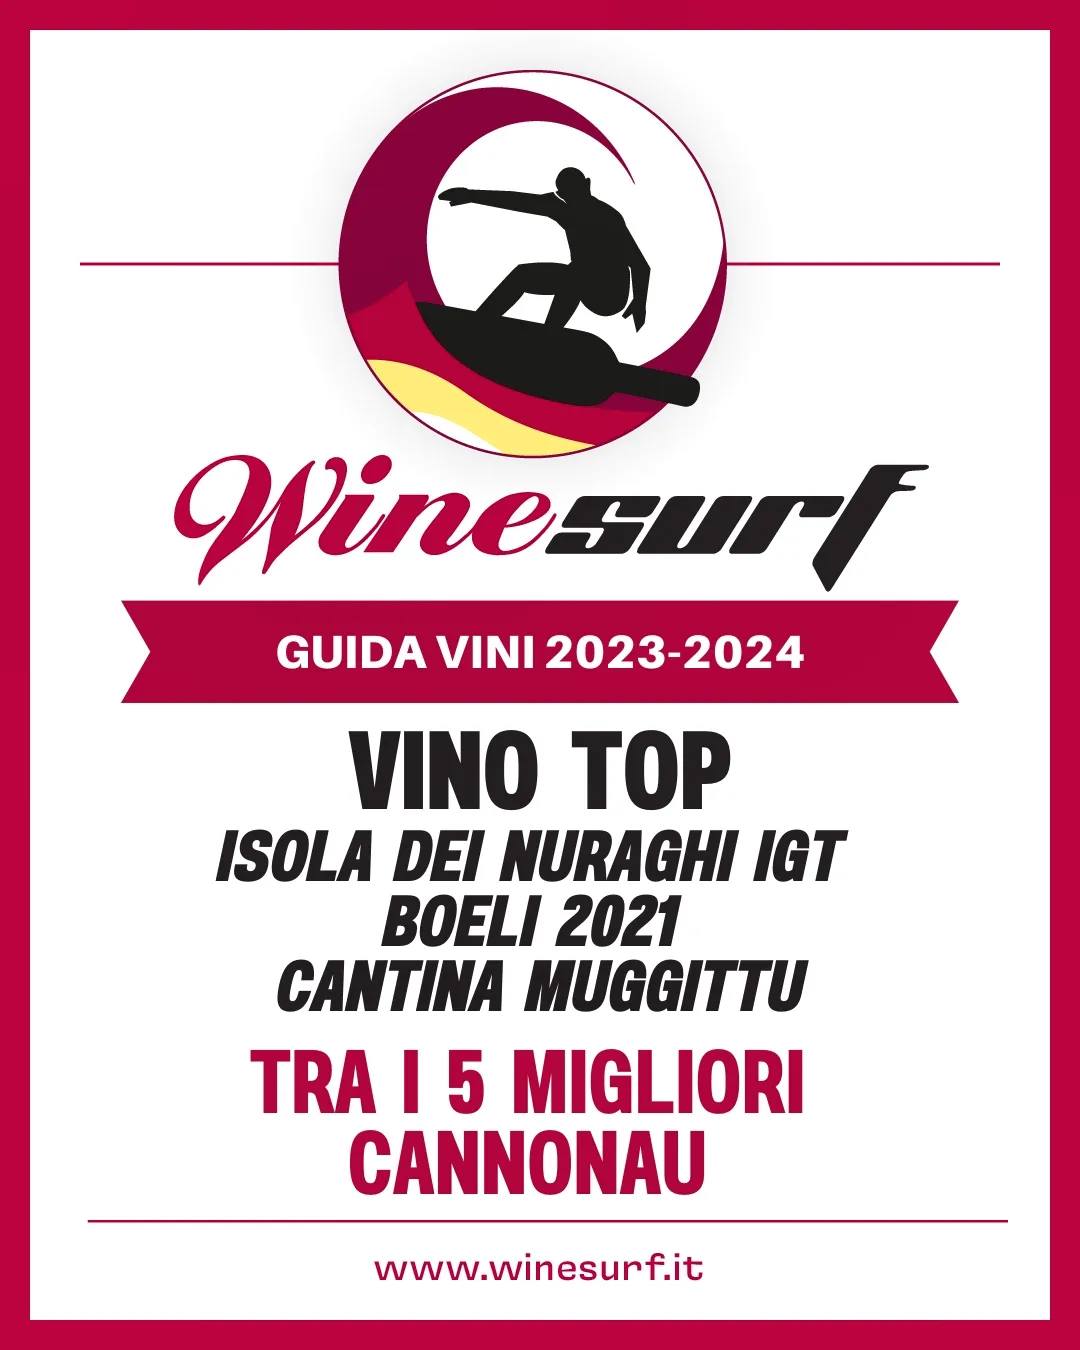 Wine surf riconoscimento boeli 2021